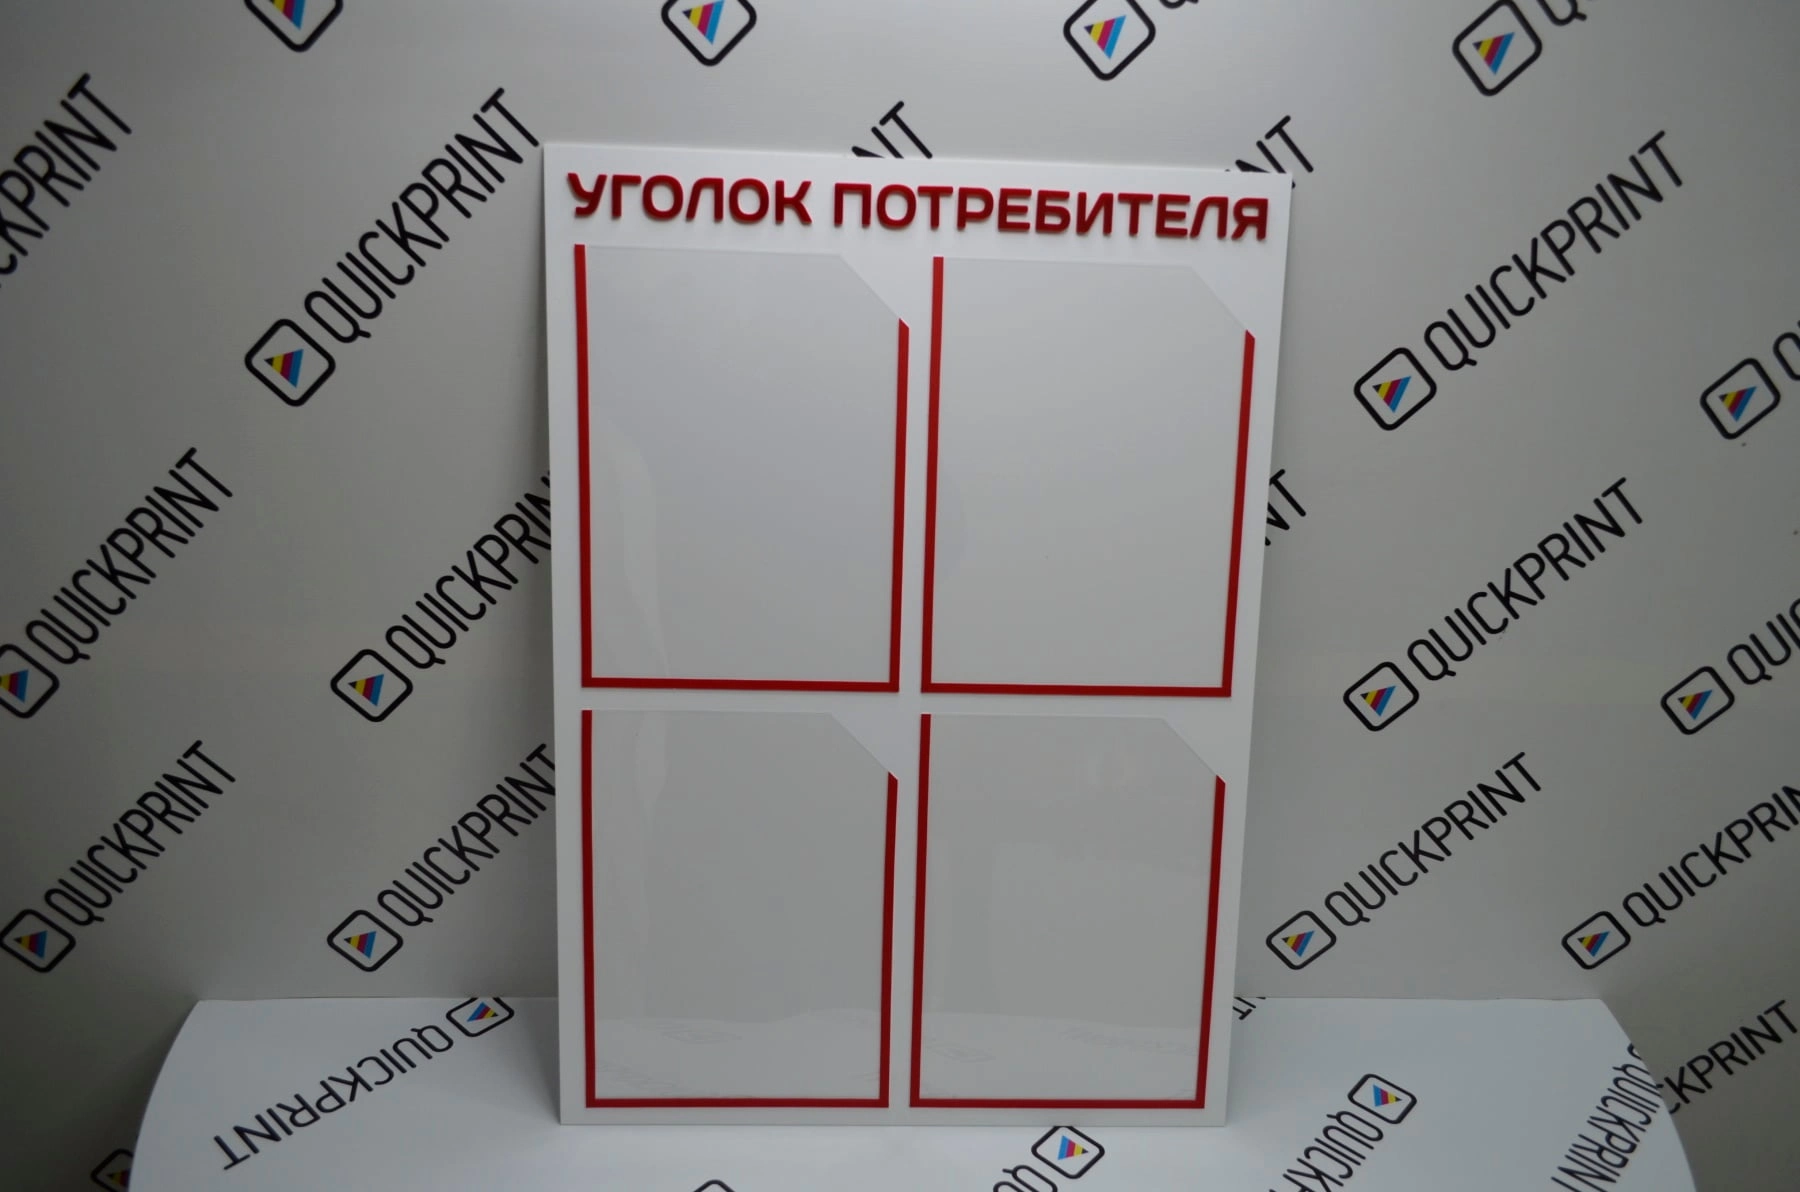 Уголок потребителя. Изготовление рекламных материалов в типографии Quickprint г. Краснодар